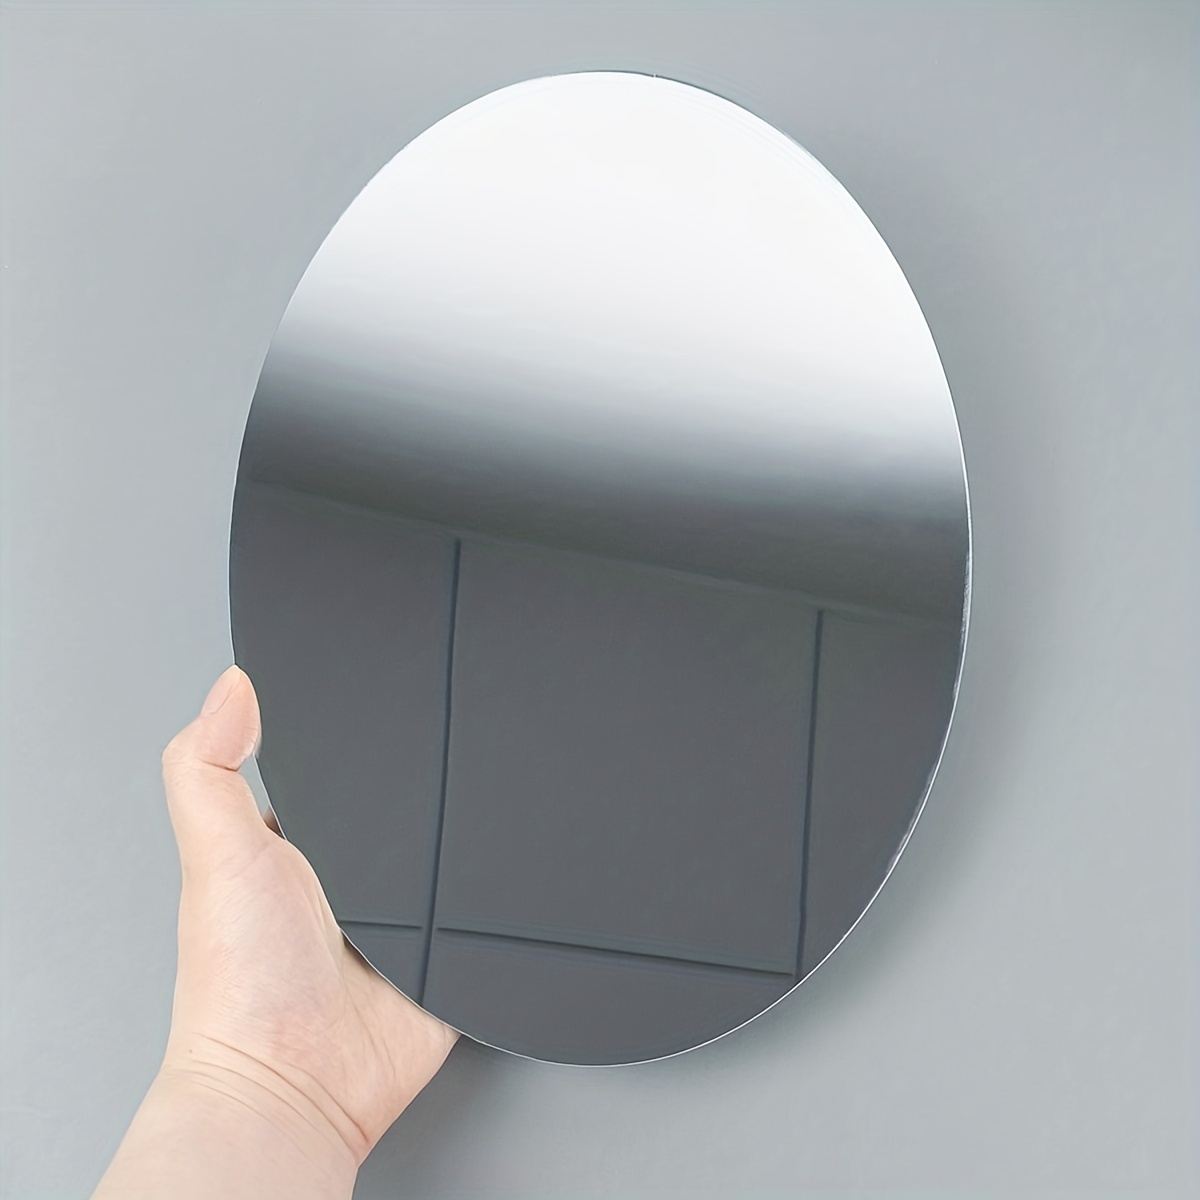 Acrylic Tiles Flexible Wall Stickers Mirror Self Adhesive Non